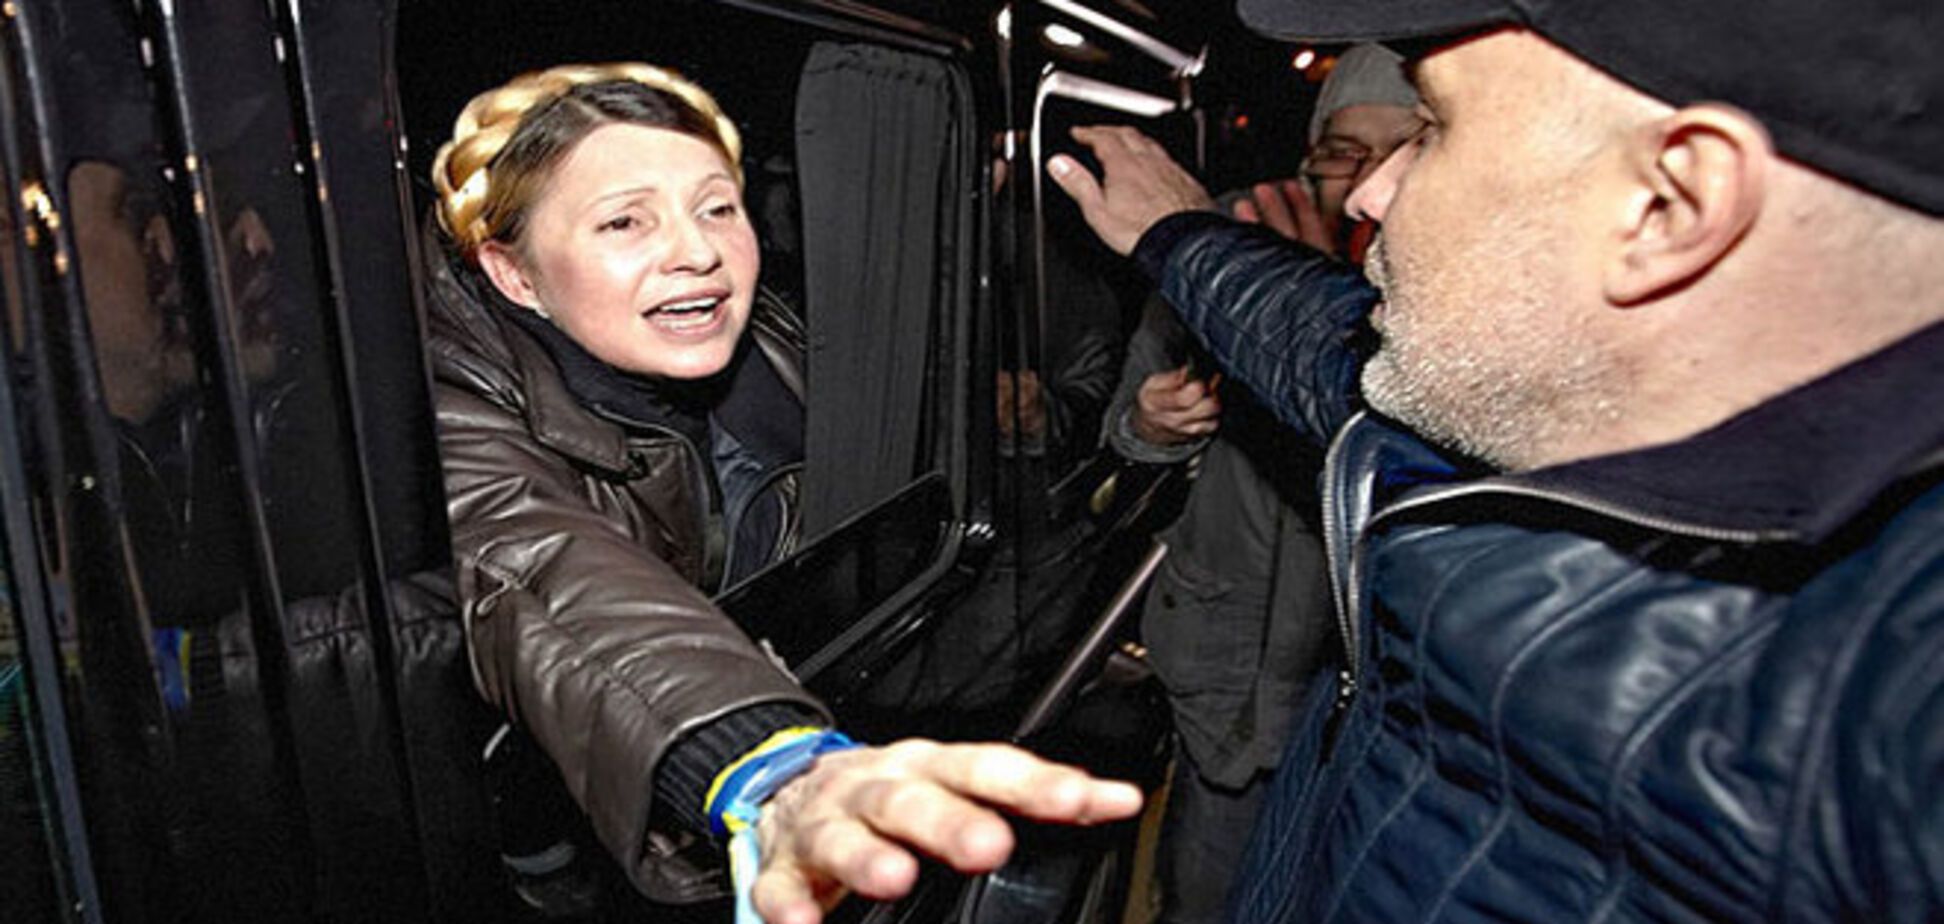 Тимошенко пытается поднять свой рейтинг за счет Порошенко - политолог